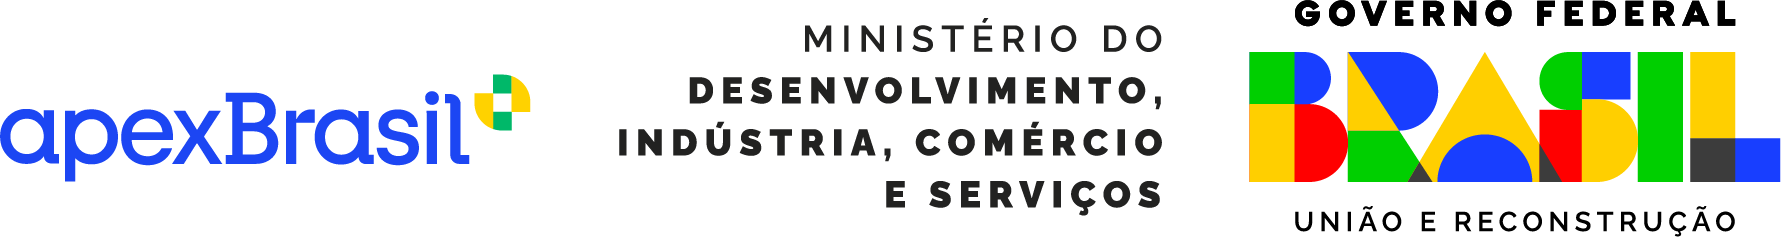 Apex nova logo trio português